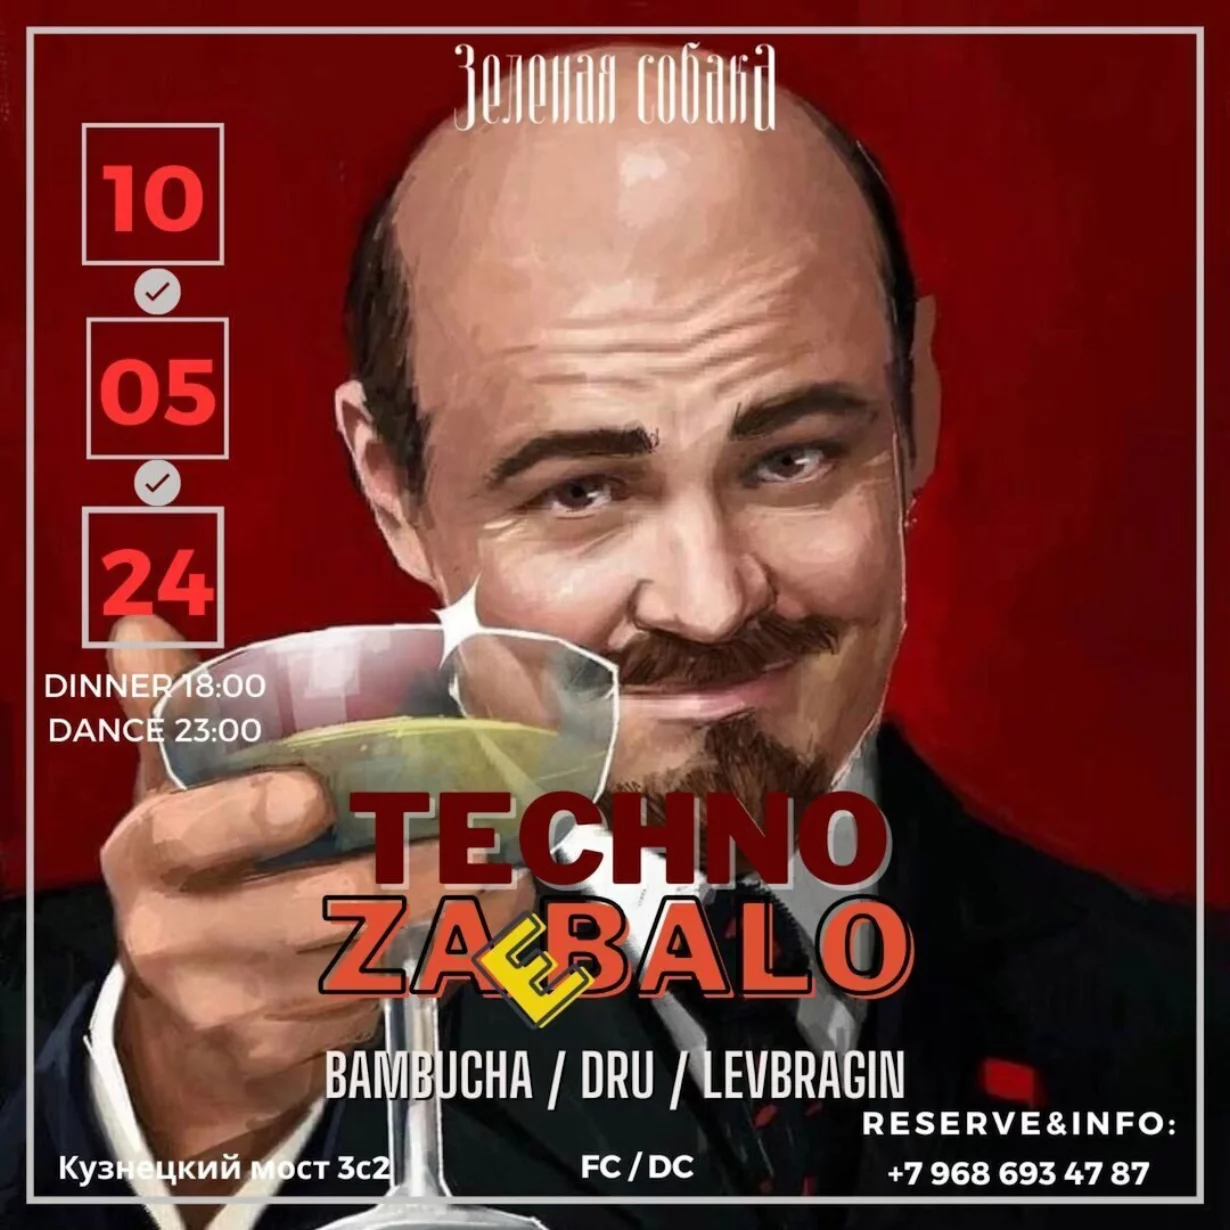 Вечеринка Techno Zadolbalo